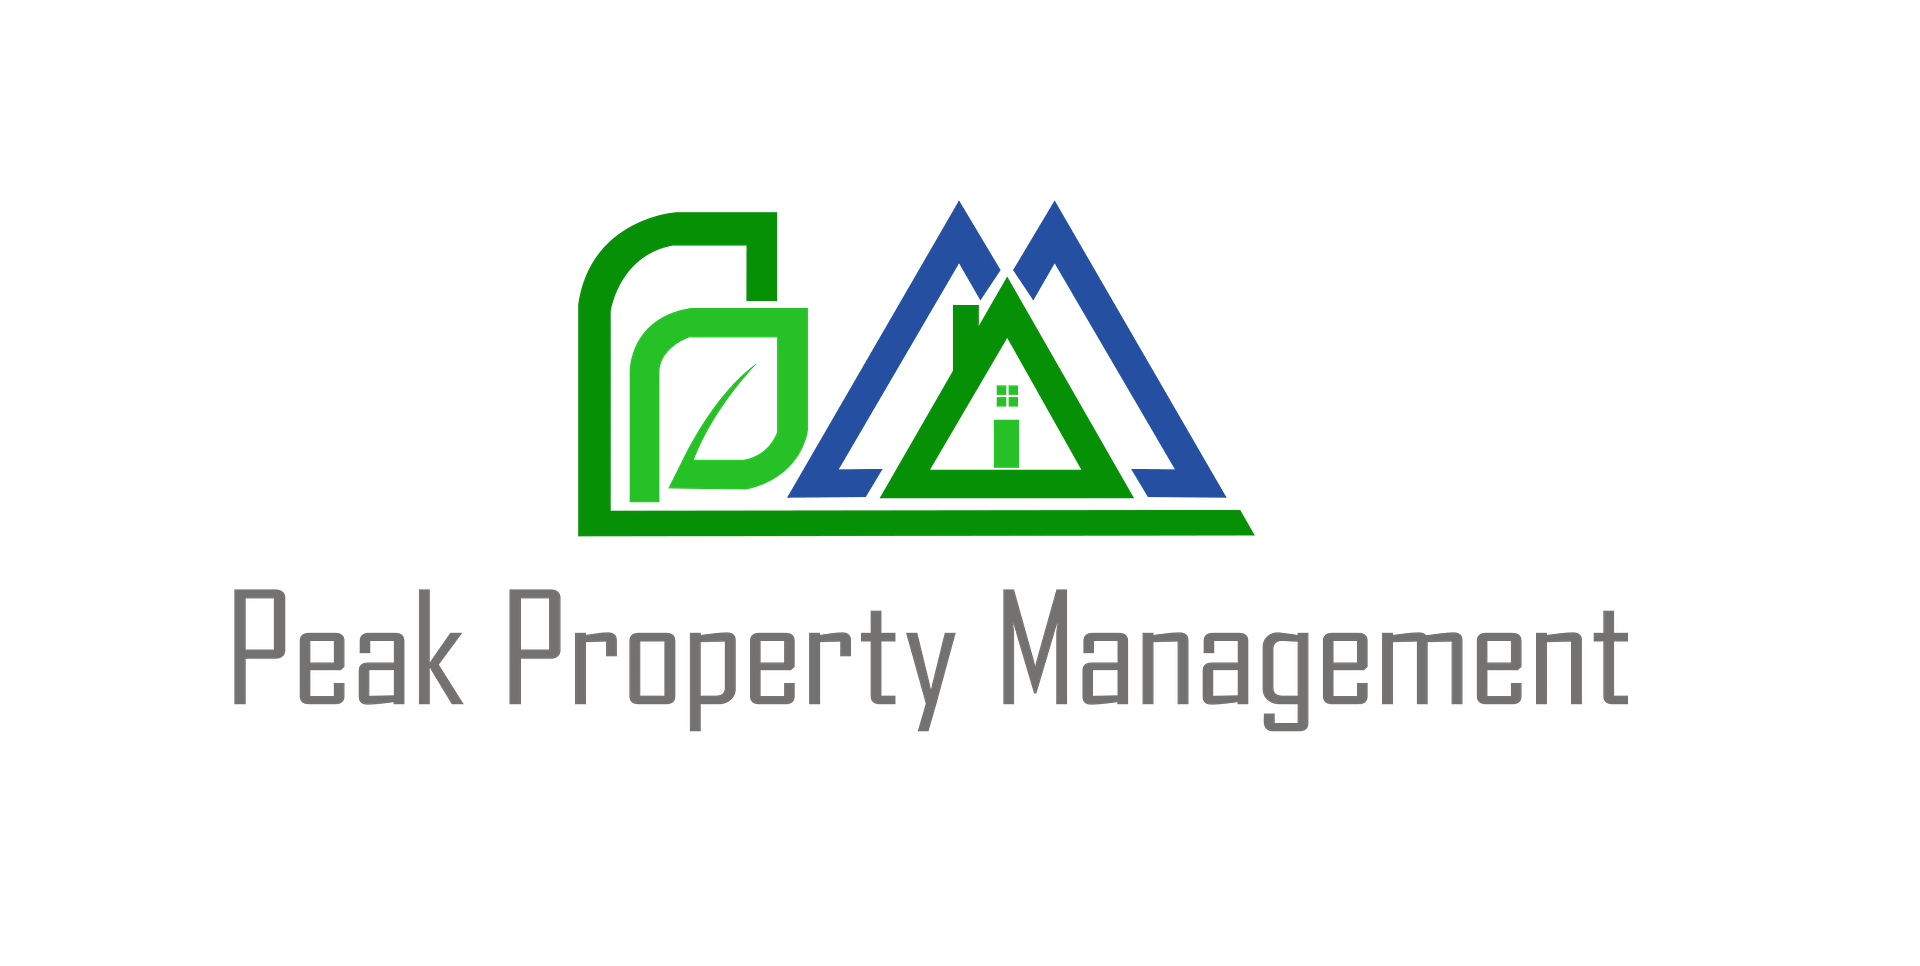 Peak property management logo